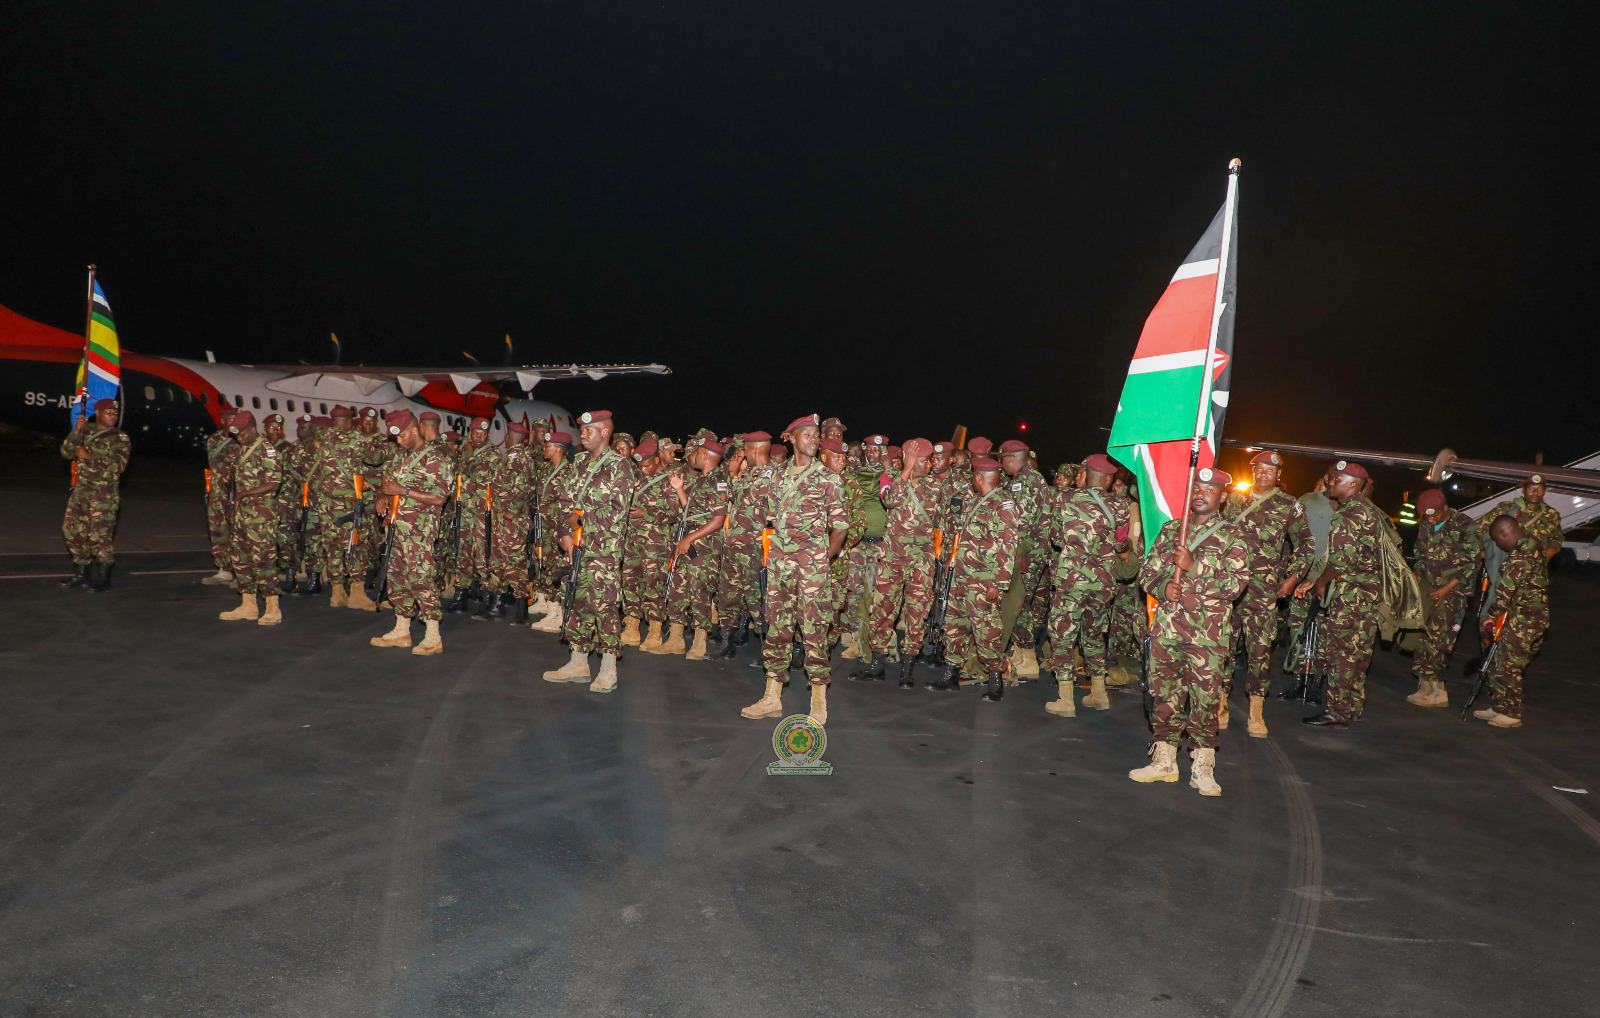 Les troupes de l’EAC quittent la RDC: le Kenya a déjà retiré 300 soldats, le Soudan du Sud va retirer 287 soldats d’ici la fin de la journée de ce vendredi